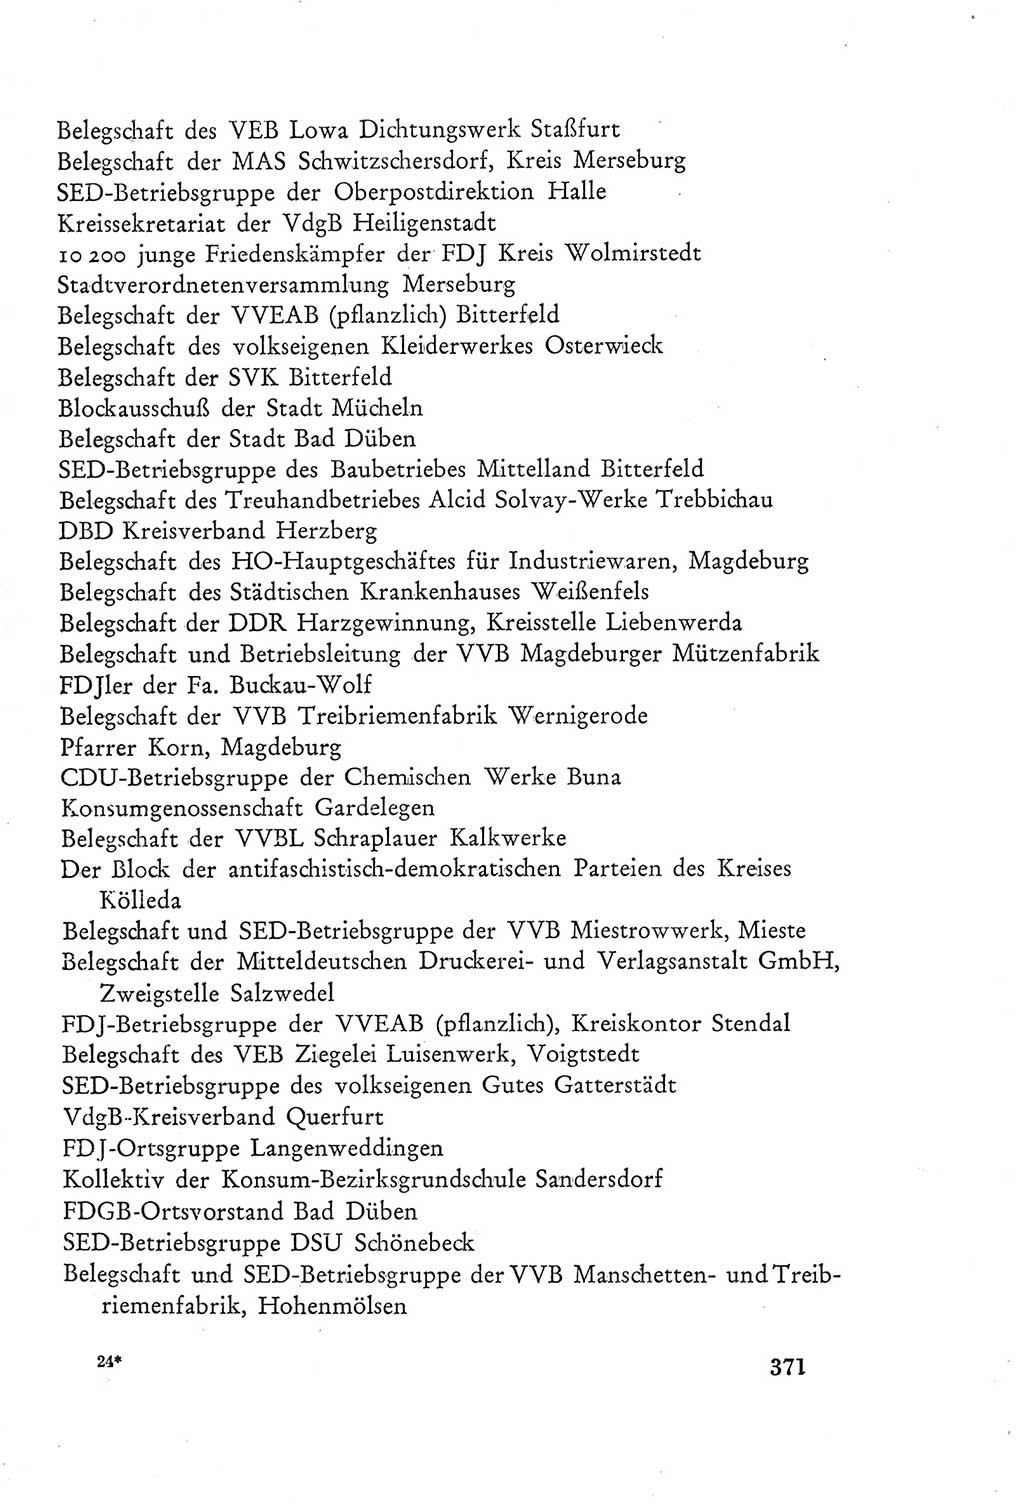 Protokoll der Verhandlungen des Ⅲ. Parteitages der Sozialistischen Einheitspartei Deutschlands (SED) [Deutsche Demokratische Republik (DDR)] 1950, Band 2, Seite 371 (Prot. Verh. Ⅲ. PT SED DDR 1950, Bd. 2, S. 371)